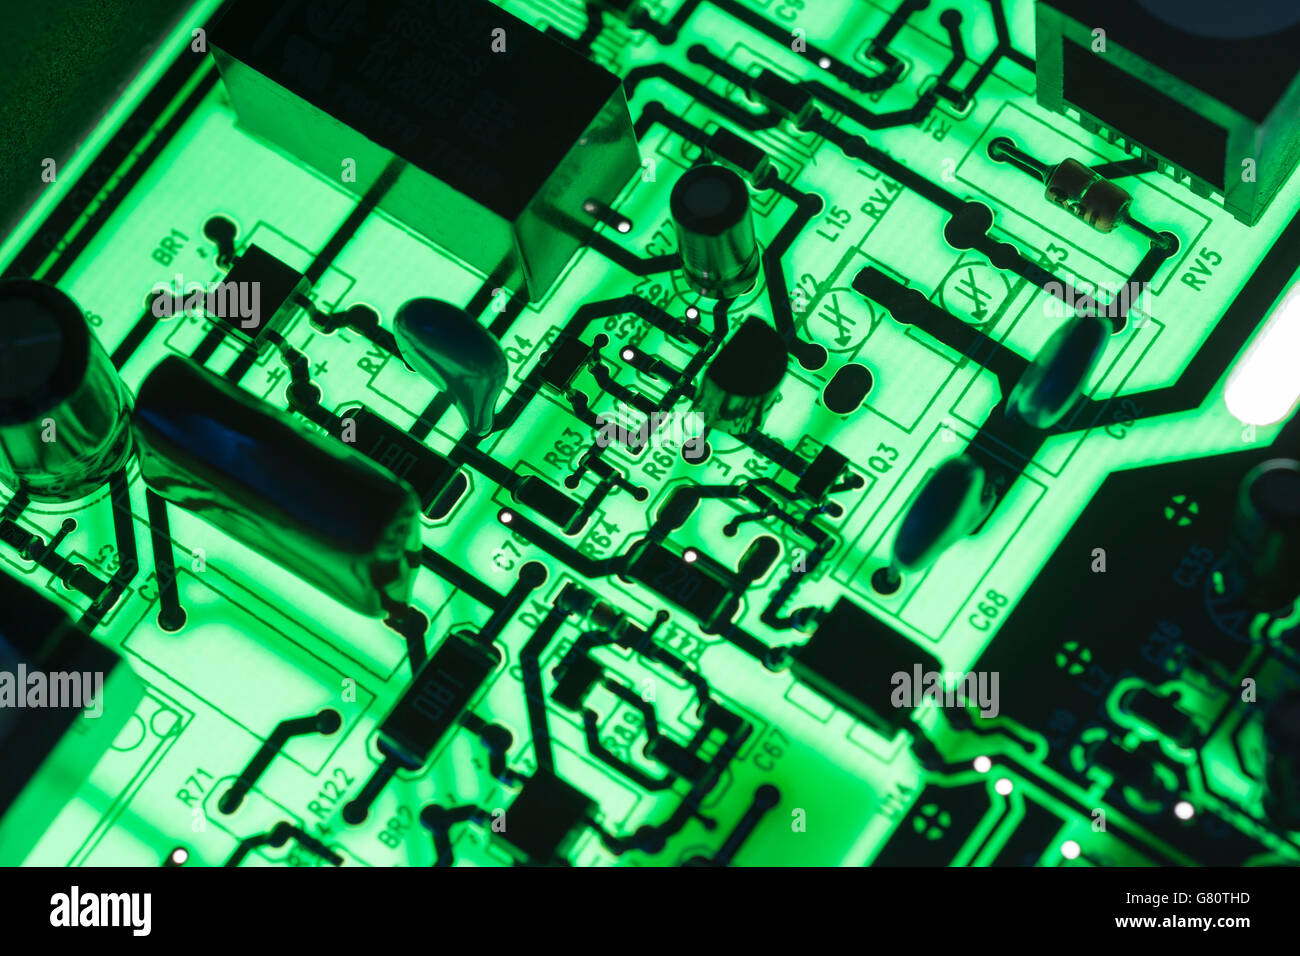 Concept de technologie informatique. Carte de circuit imprimé / carte de circuit imprimé montrant les composants rétroéclairés avec un voyant vert. Câblage à l'intérieur du calculateur, gros plan du circuit, électronique. Banque D'Images